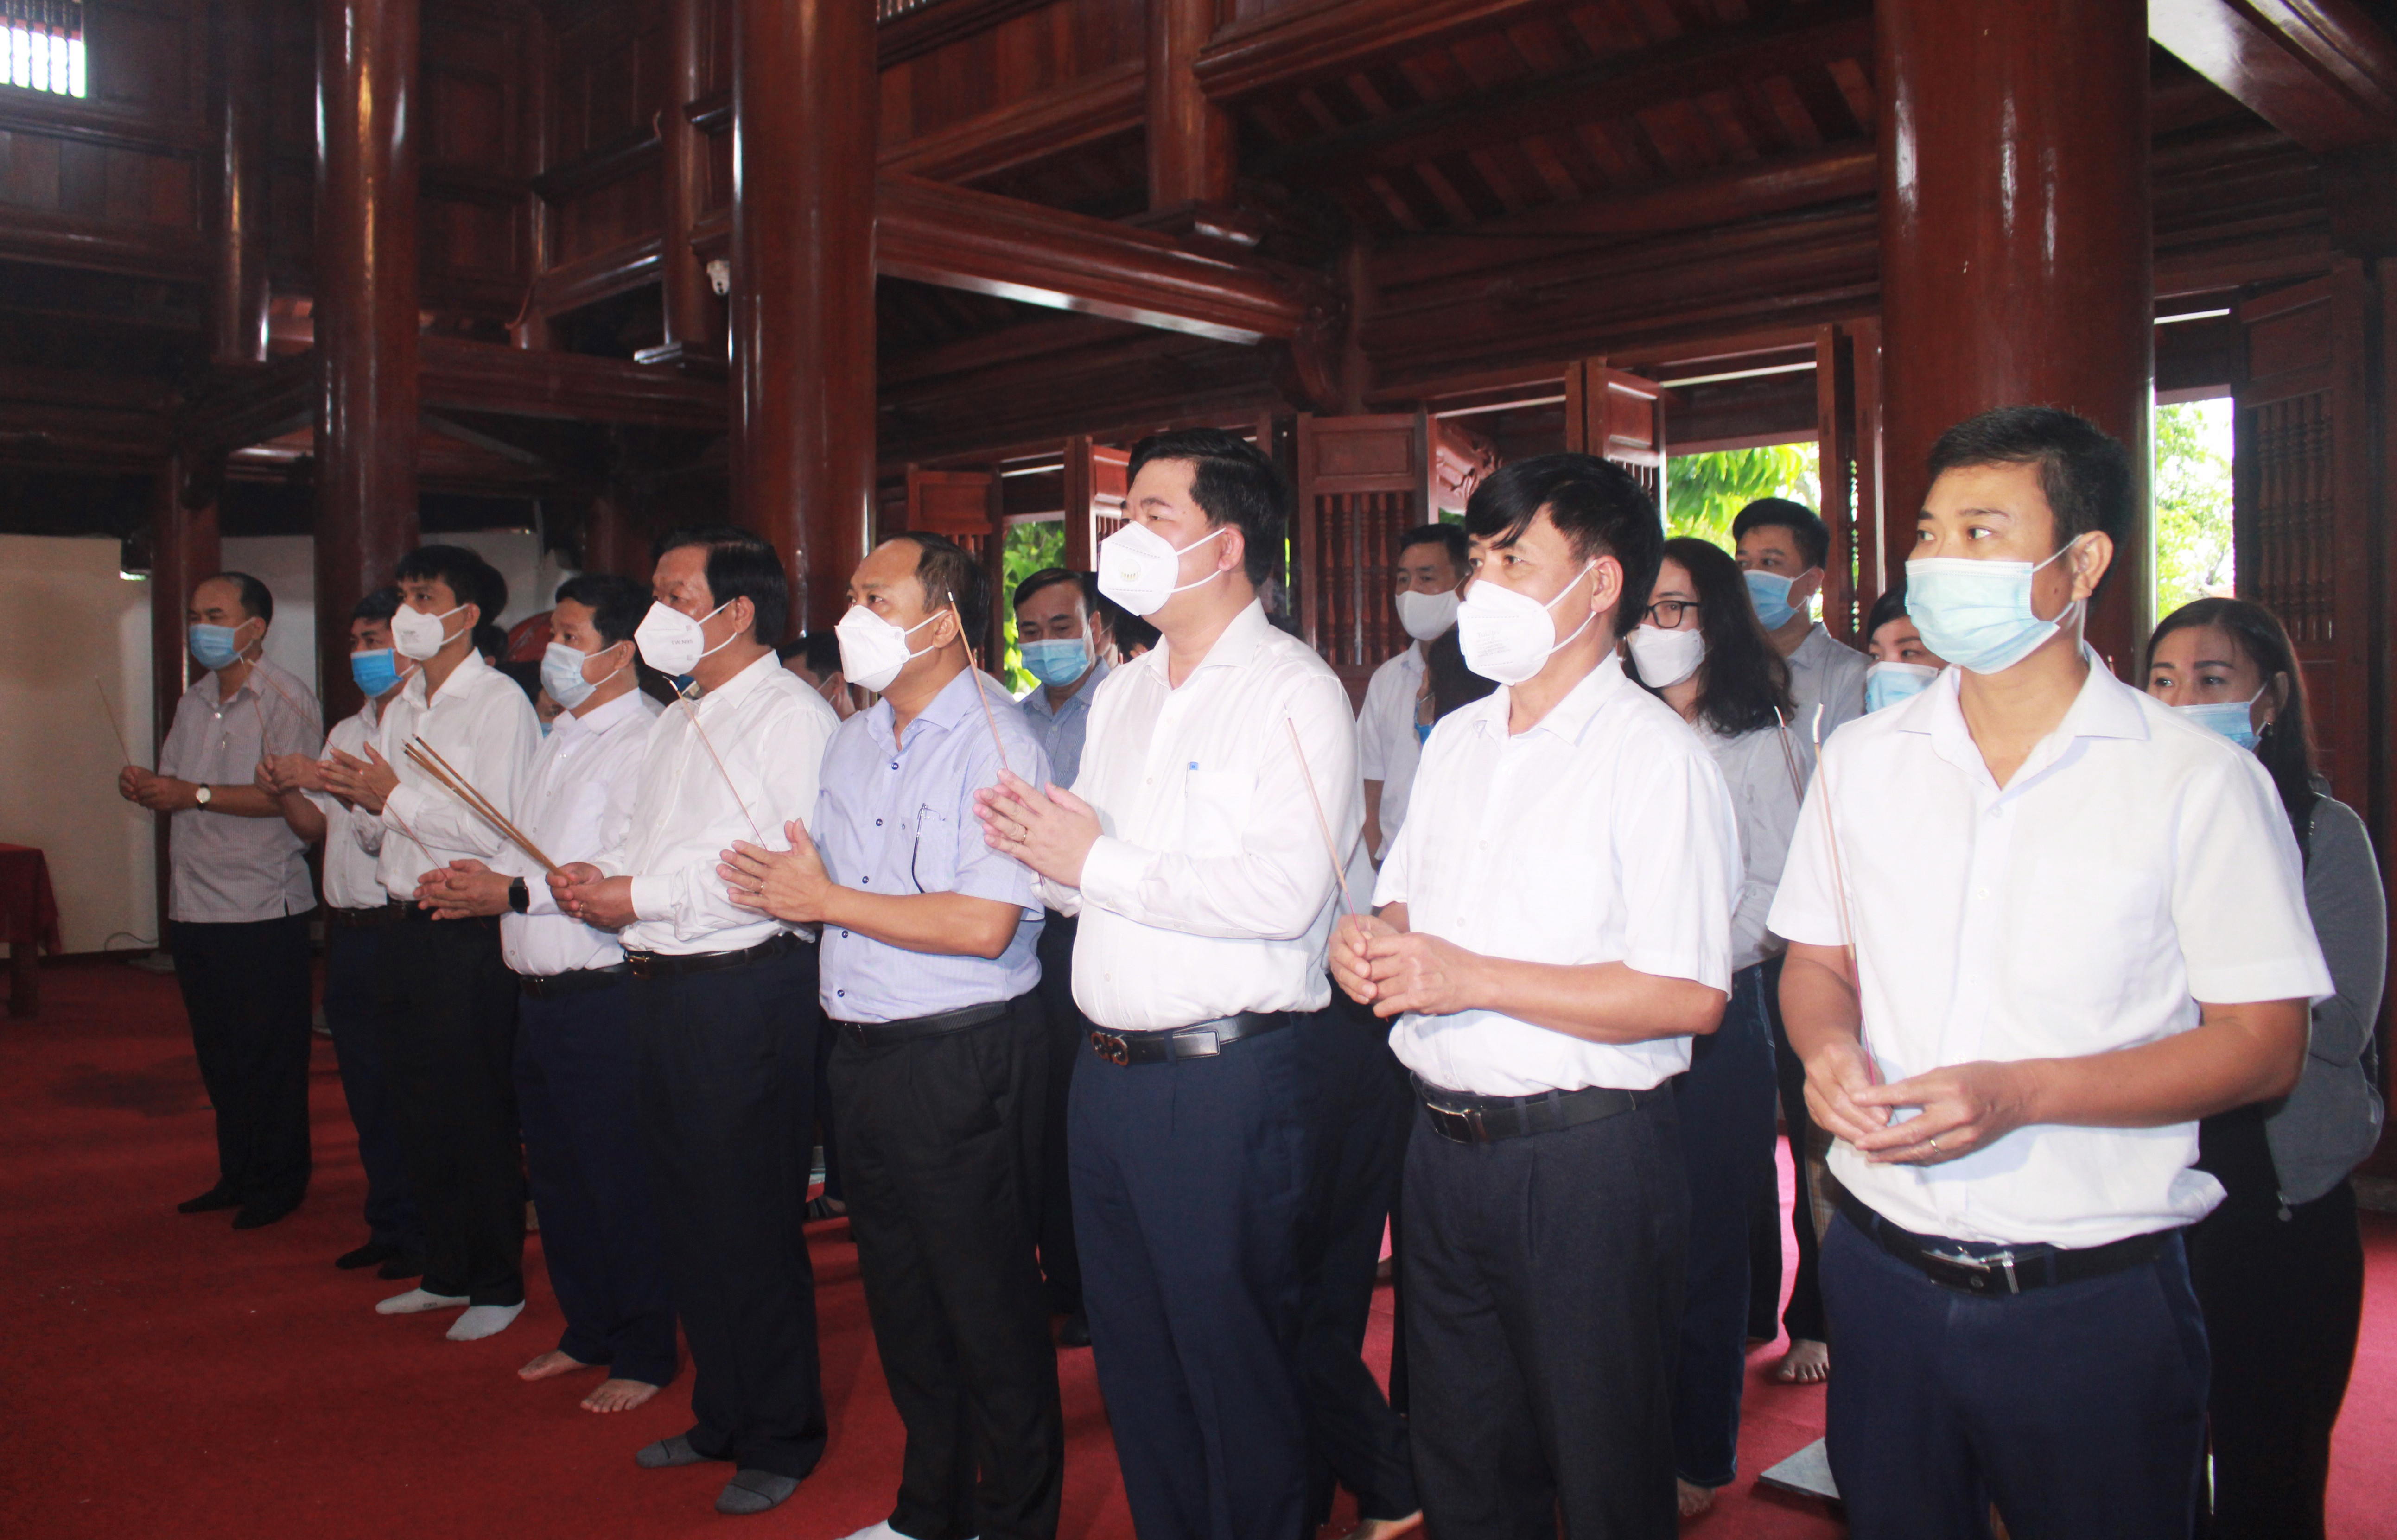 Các thành viên trong đoàn dâng nén hương thơm lên anh linh Chủ tịch Hồ Chí Minh và các anh hùng liệt sỹ. Ảnh: Thái Hiền 